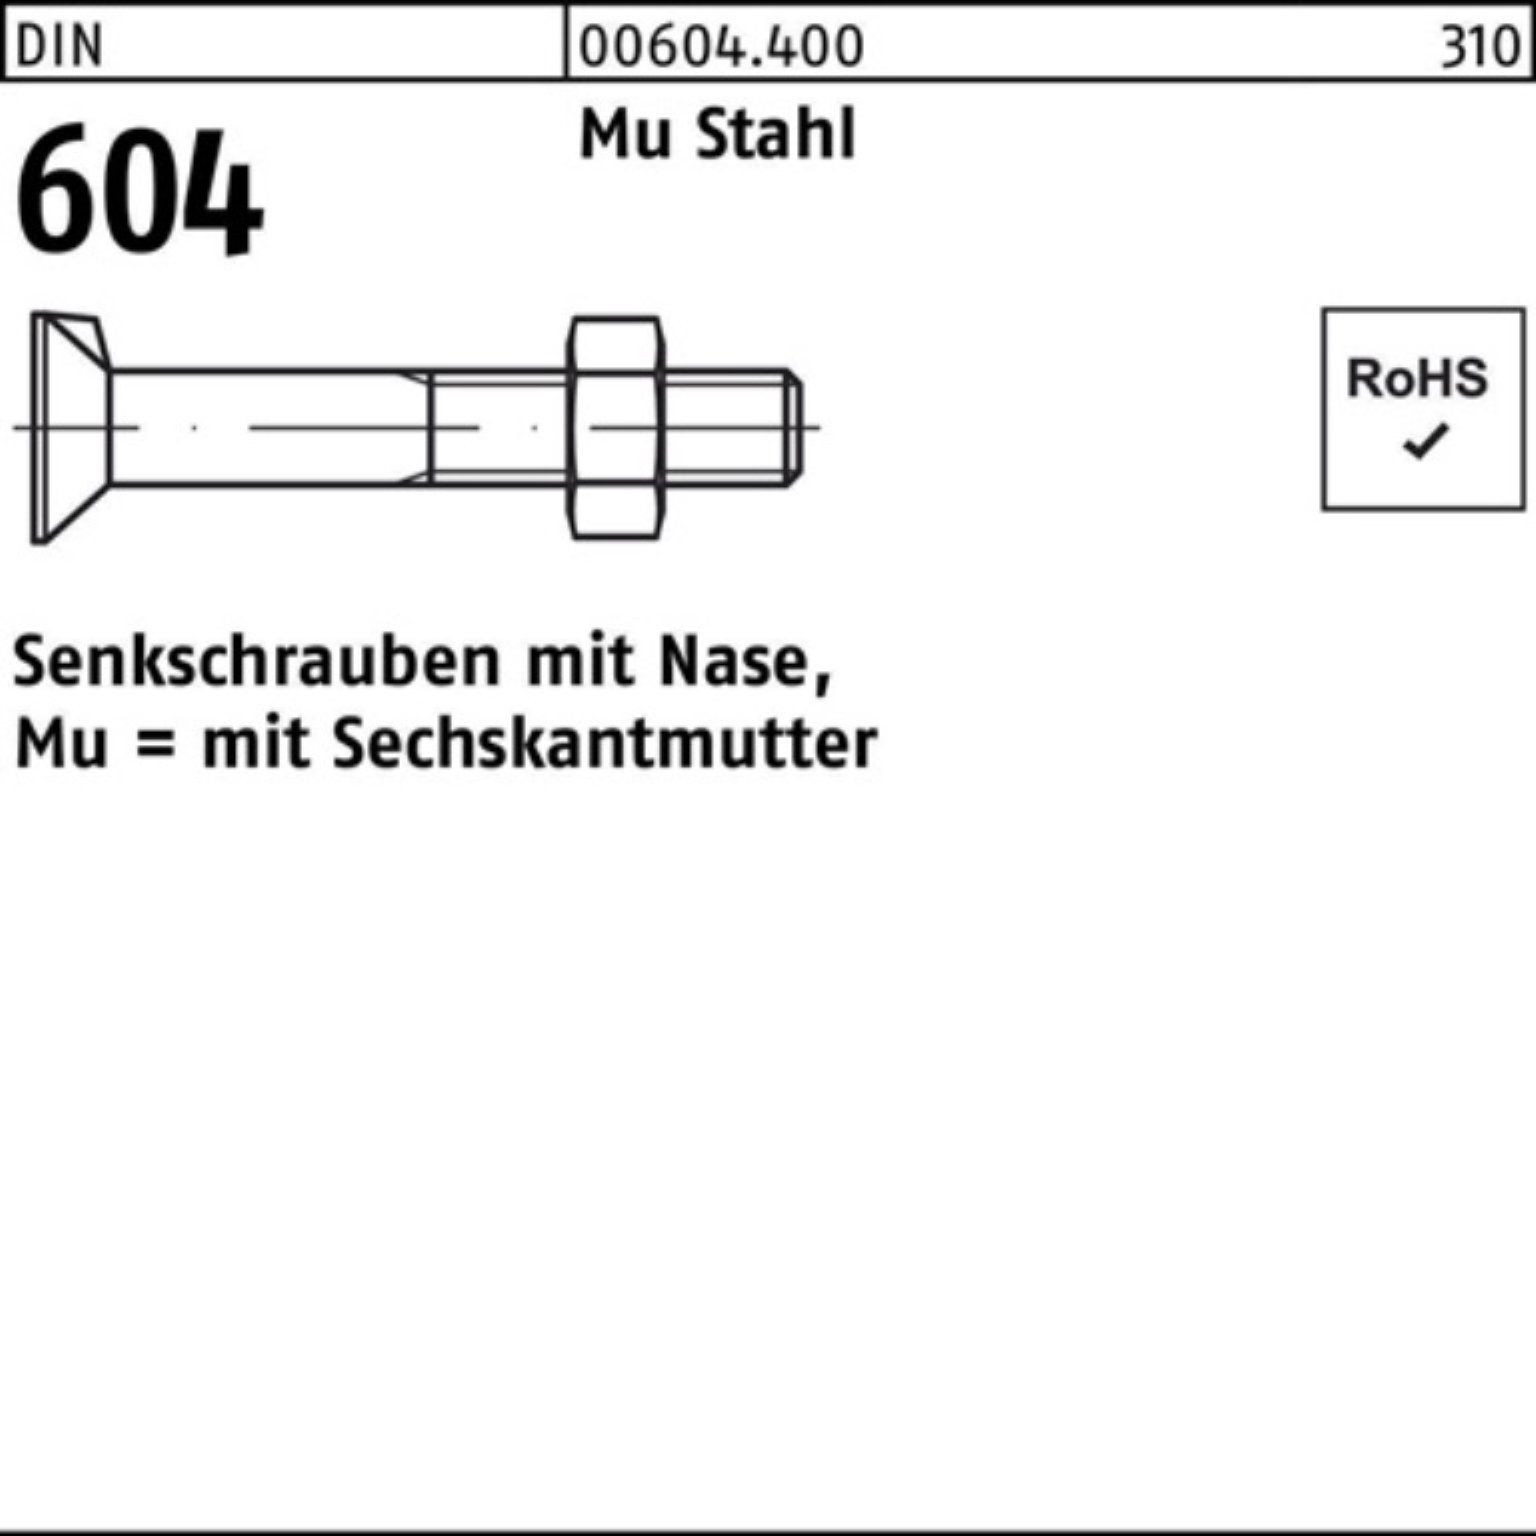 Reyher Senkschraube 100er Pack Senkschraube M16x 2 80 604 Nase/6-ktmutter DIN Mu Stahl 4.6